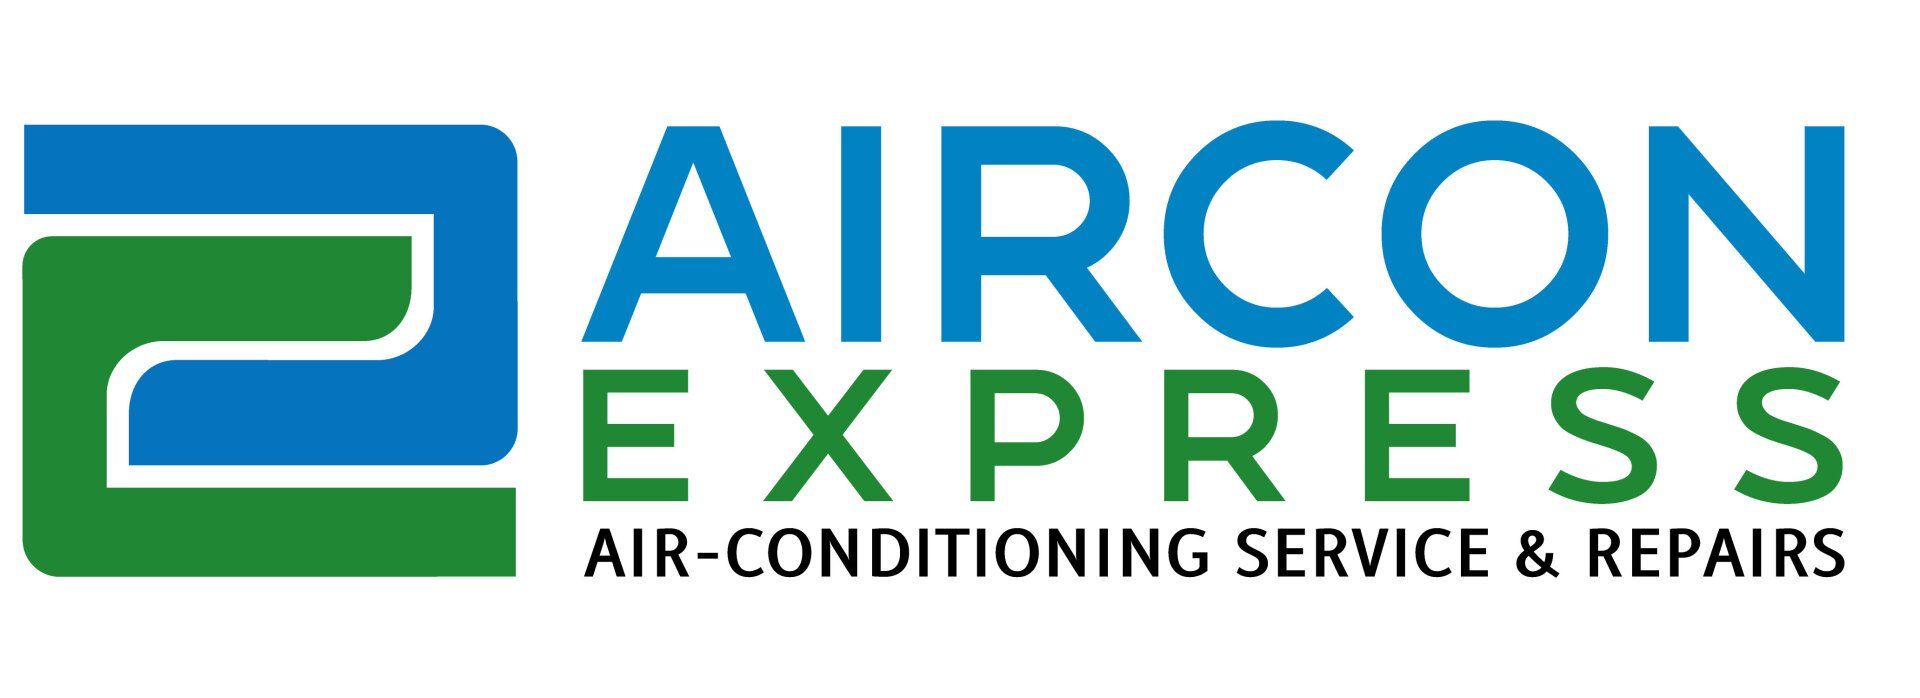 Aircon Express Service & Repairs Perth